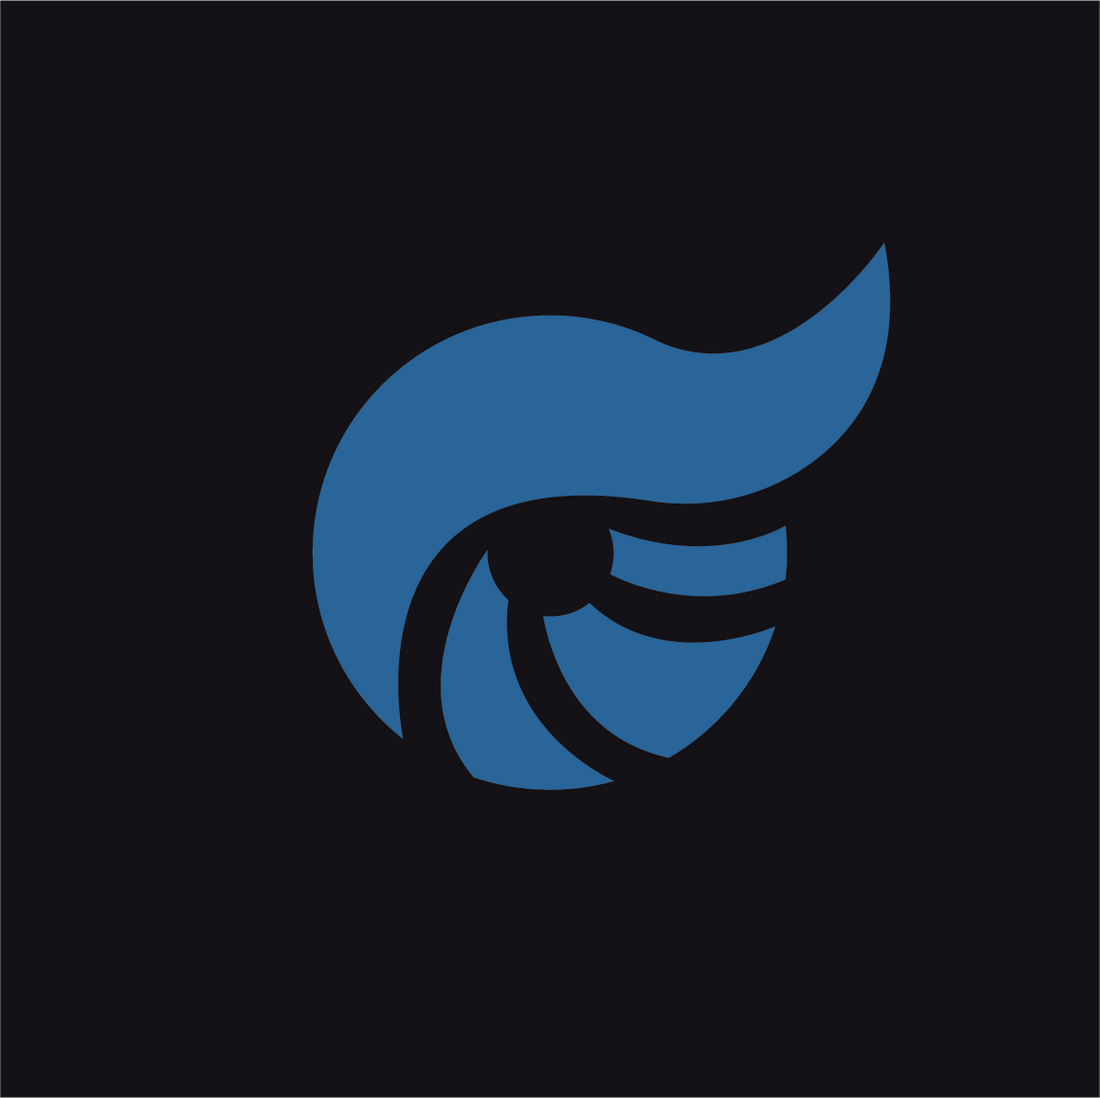 Eltra Store logotyp svart och blå som används på instagram facebook och andra kanaler under namnet @eltrastore